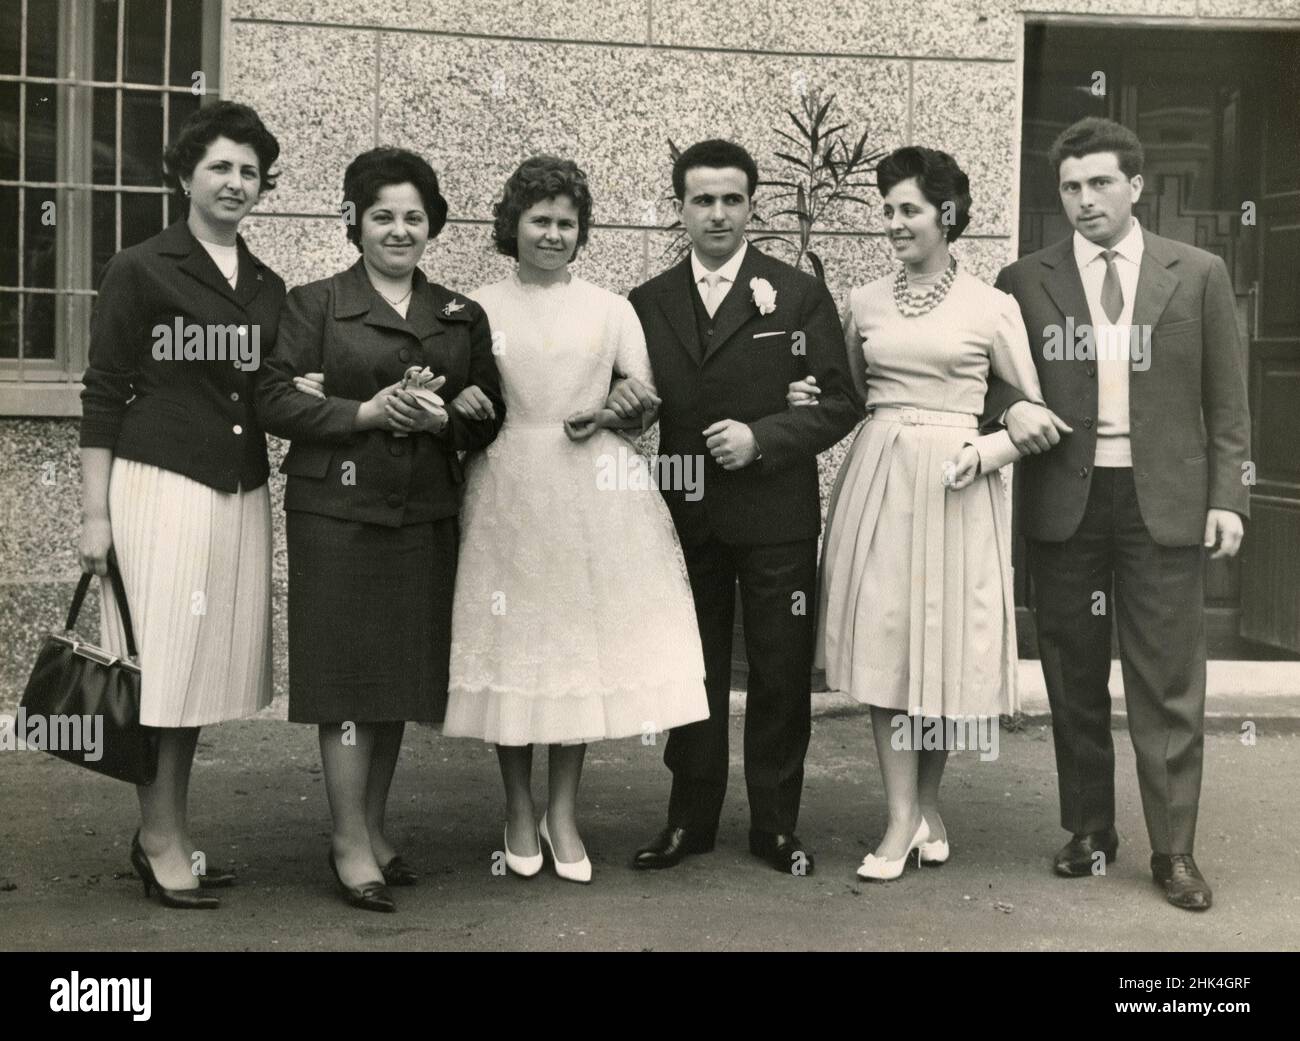 Matrimonio in Italia durante il 1950s: La sposa e lo sposo fanno la foto con i parenti Foto Stock